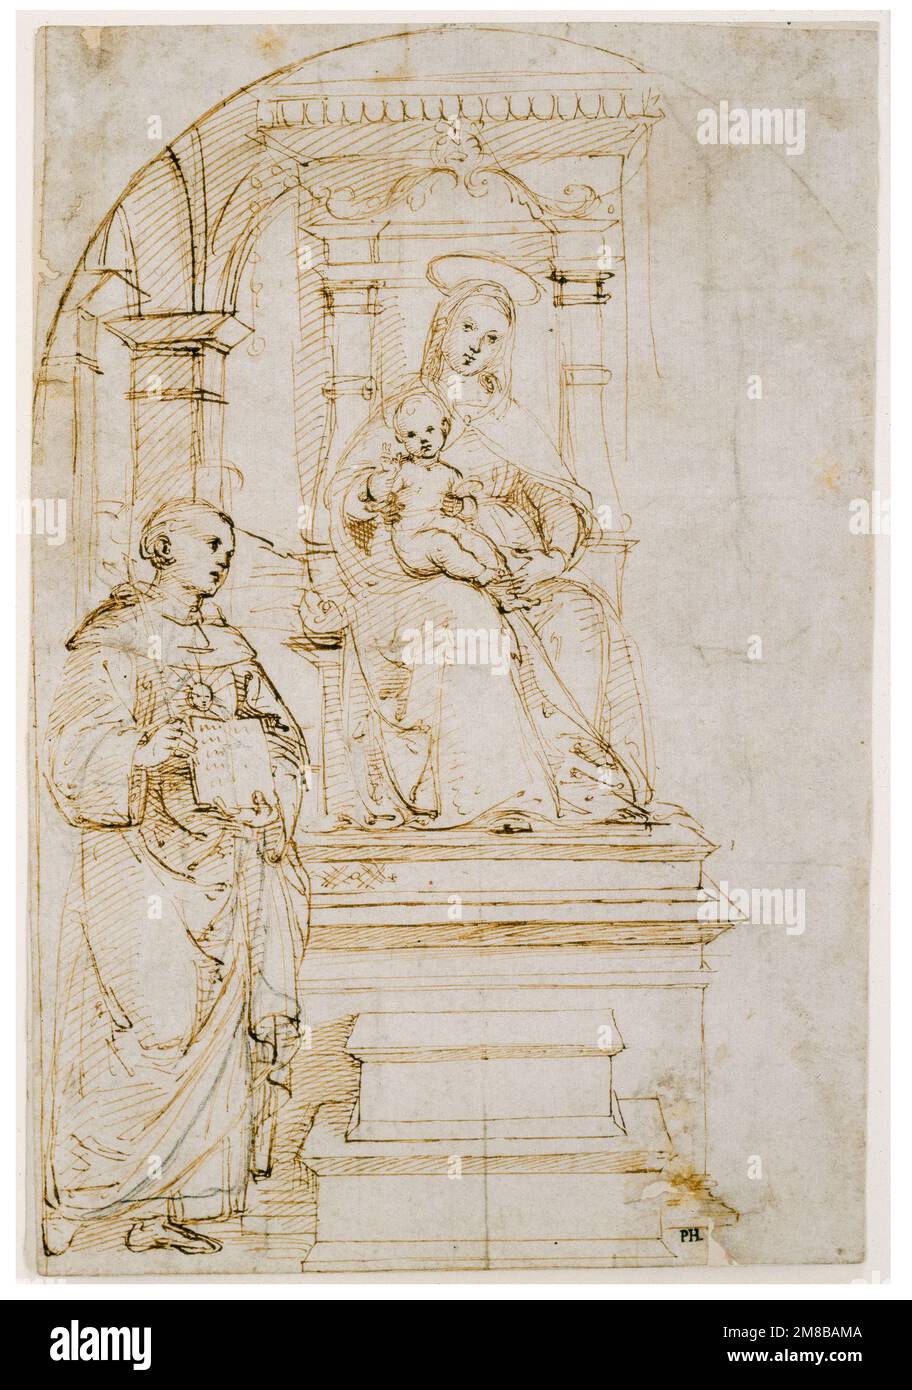 Raphael (Raffaello Sanzio de Urbino), esquisse pour une Vierge et un enfant entronés avec Saint Nicolas de Tolentino, dessin au stylo et à l'encre avec le point de passage, 1502-1504 Banque D'Images